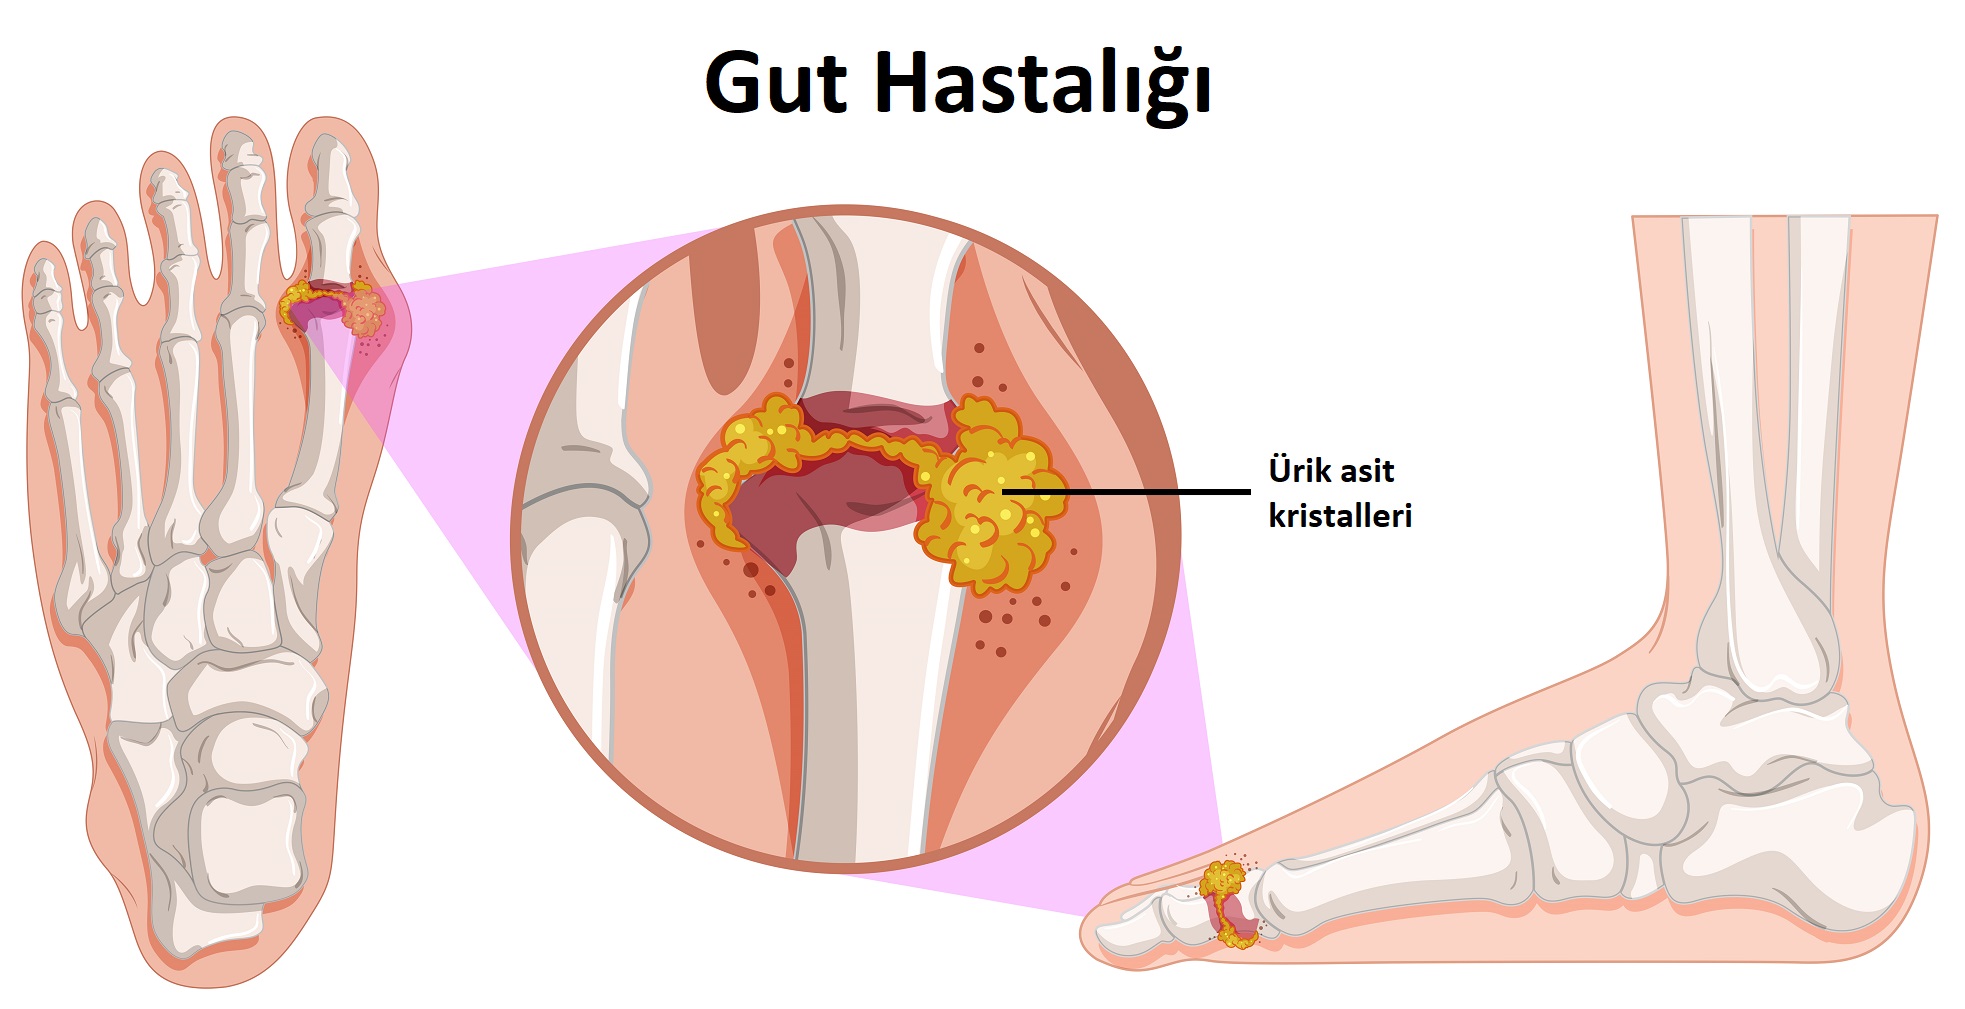 Gut hastalığı nedir? Beslenme Tedavisi nasıl olmalı?